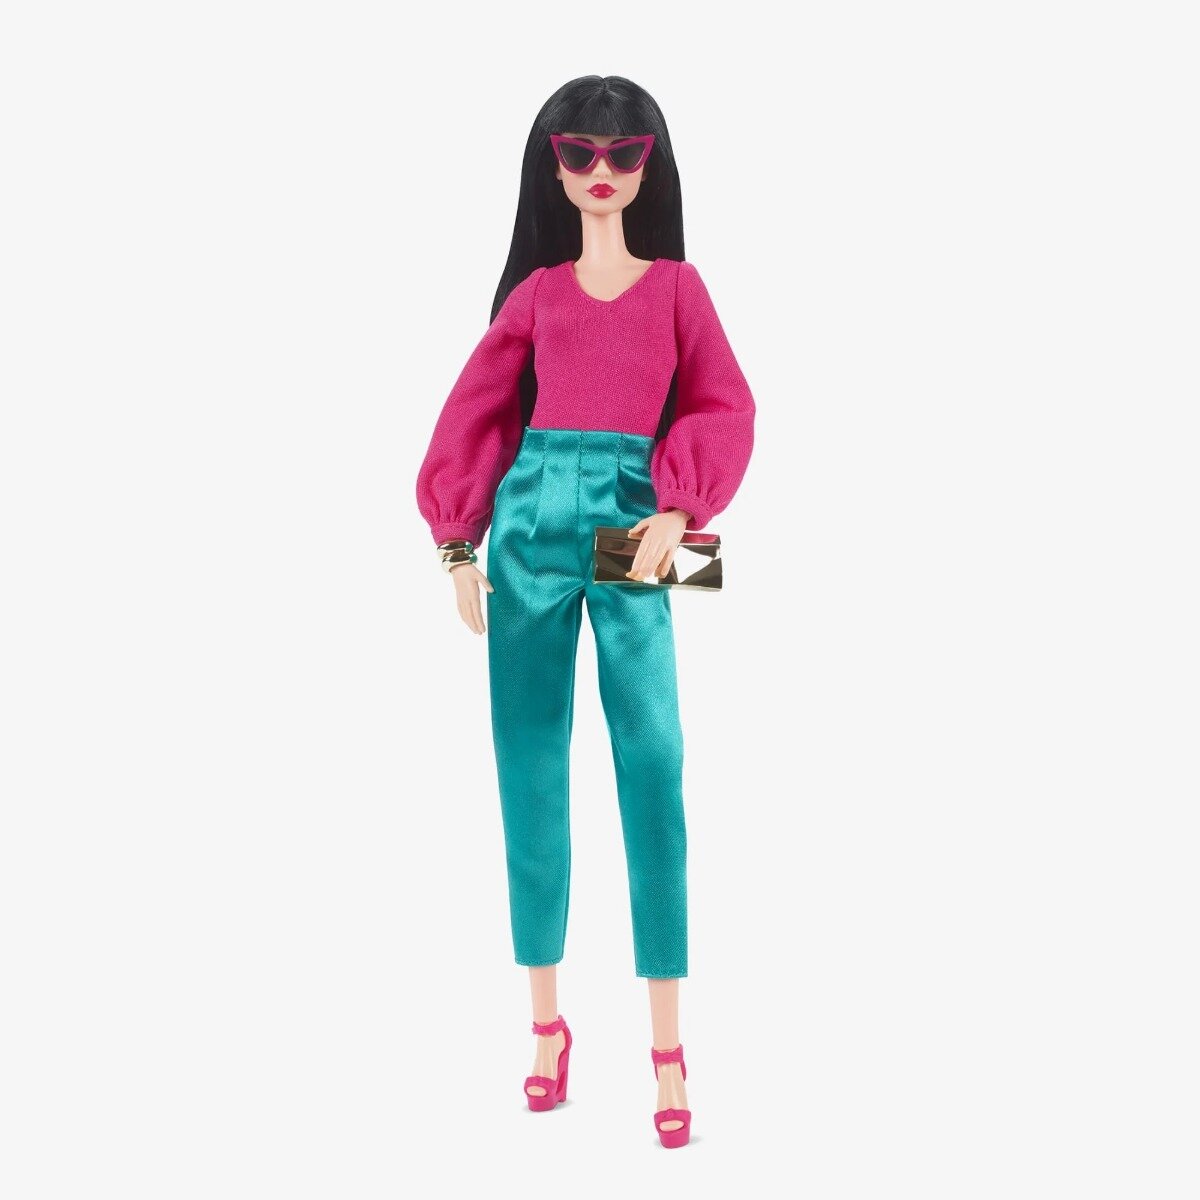 Кукла Barbie Looks Doll With Mix-and-Match Fashions (Барби Лукс мода Микс-энд Мэтч)